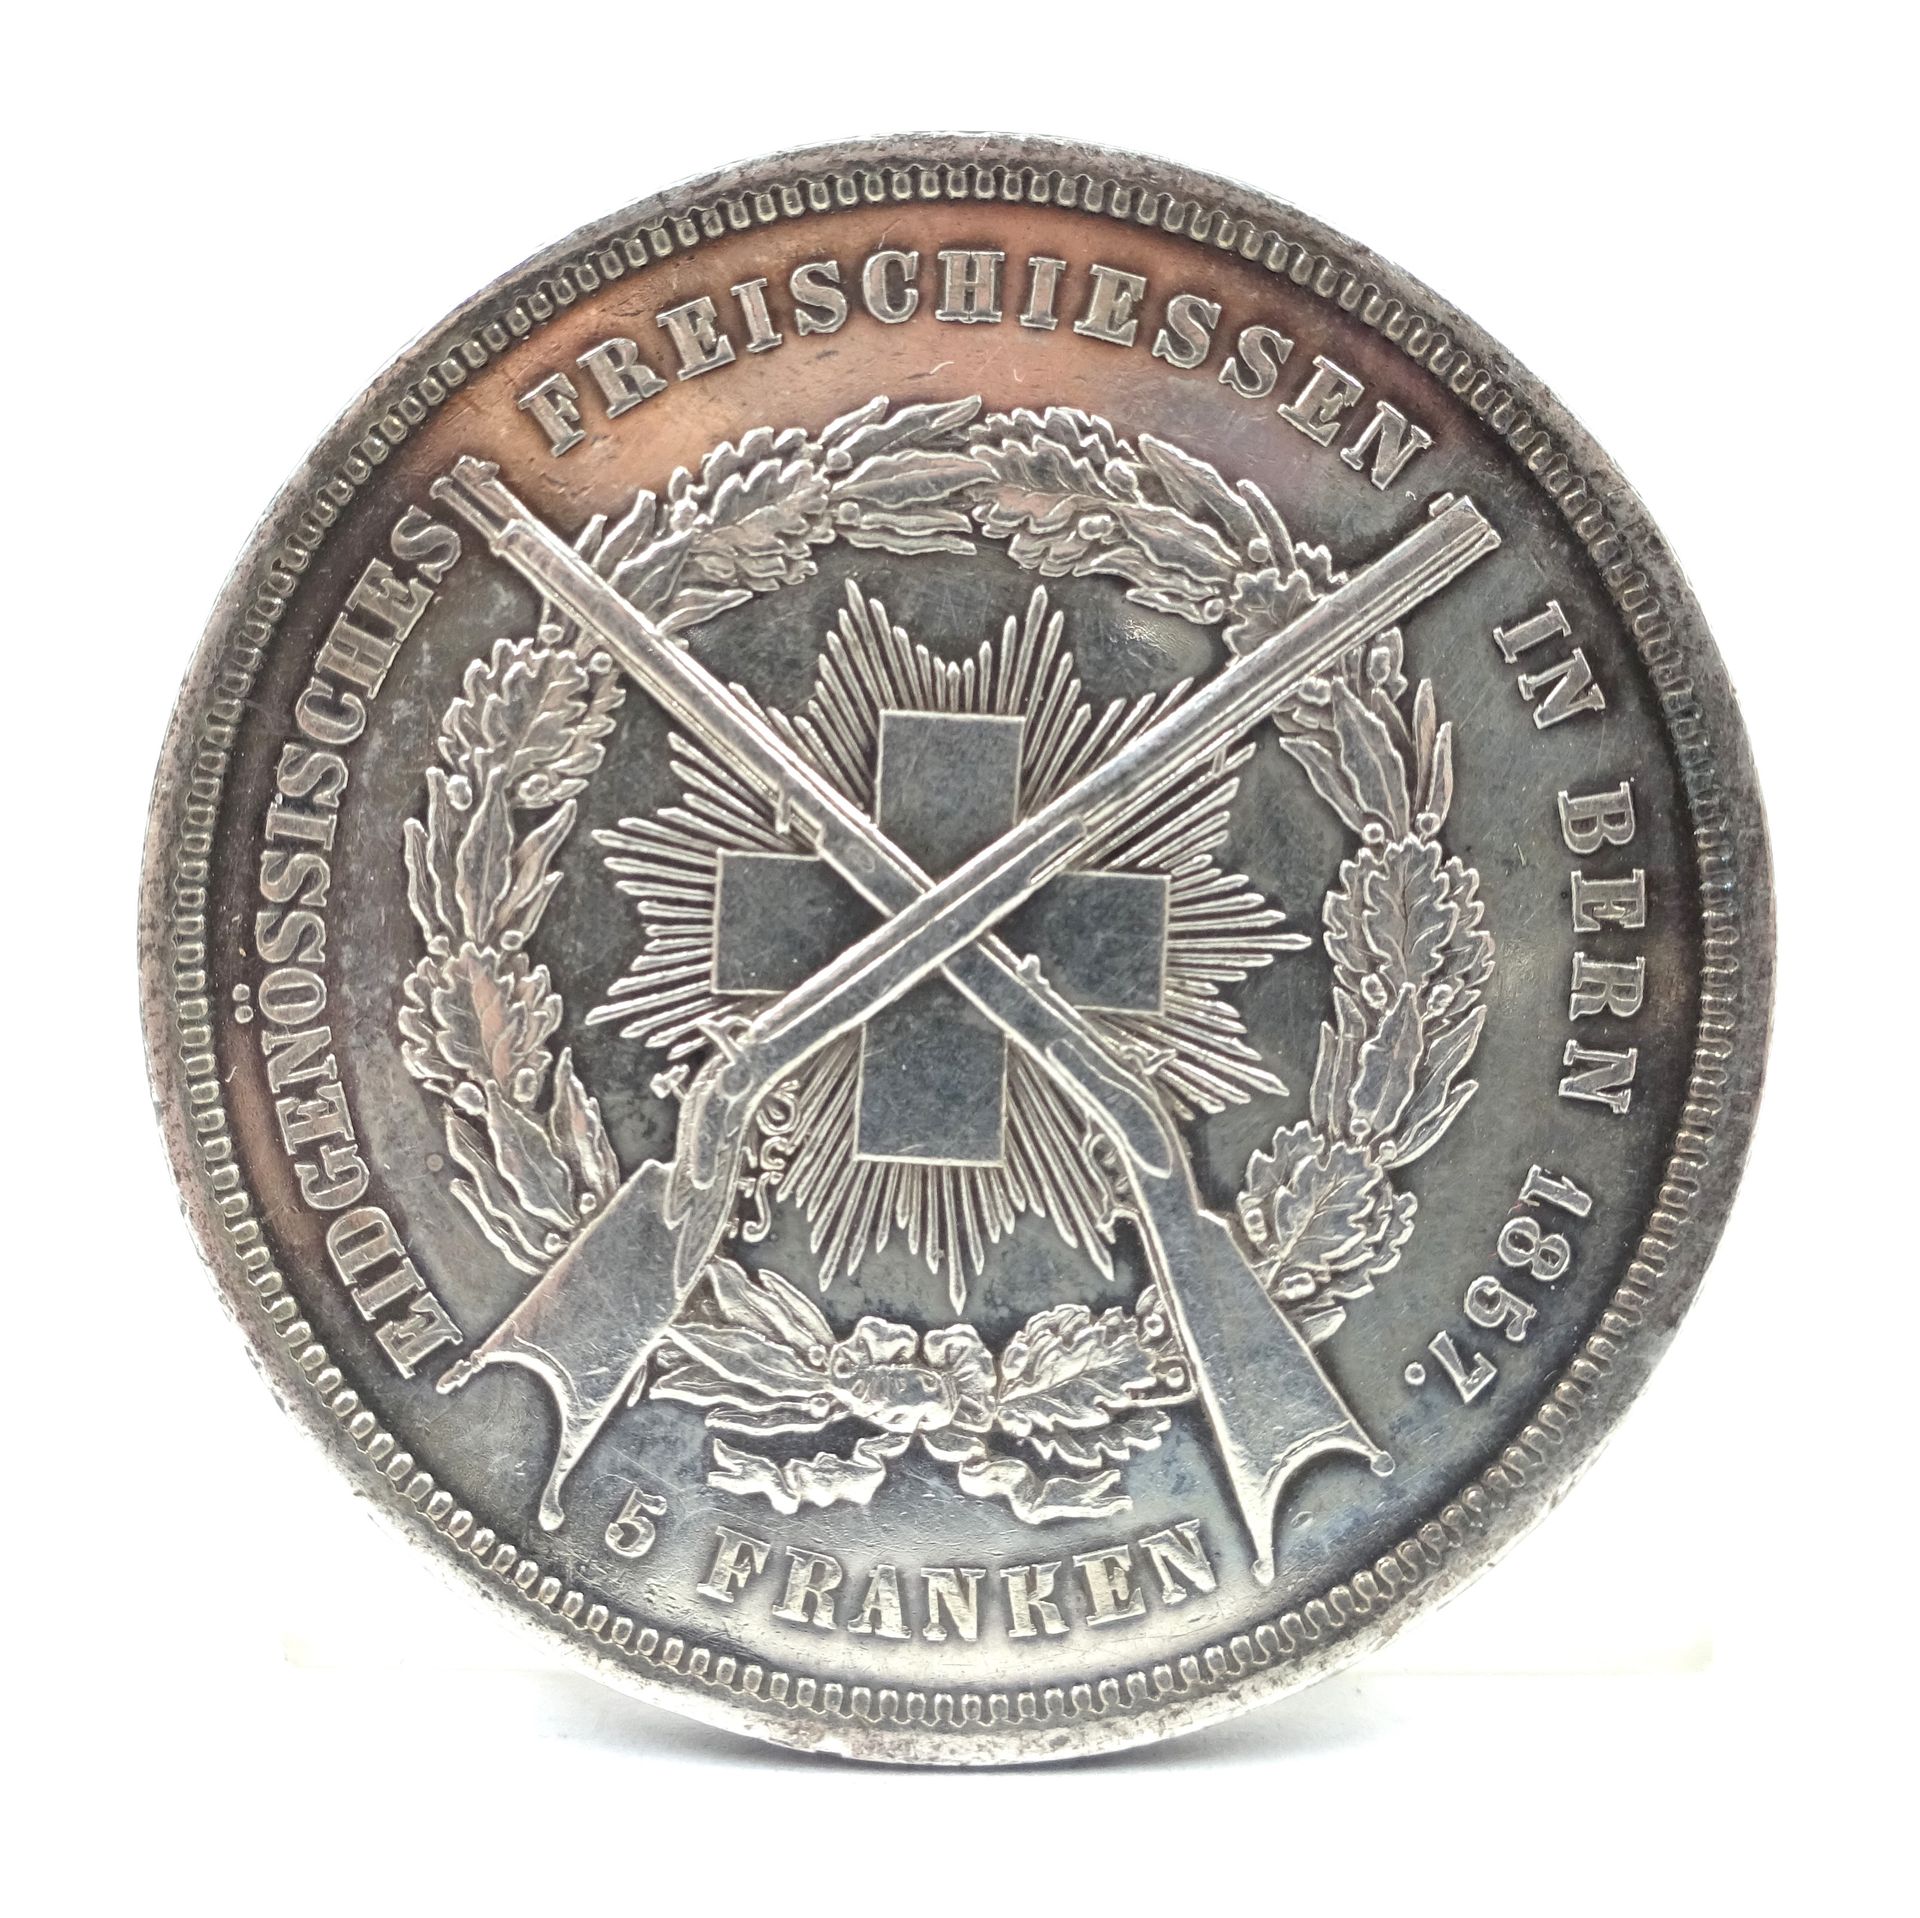 Null Pièce de 5 francs suisses en argent, Berne, 1857. 25,00 g net.